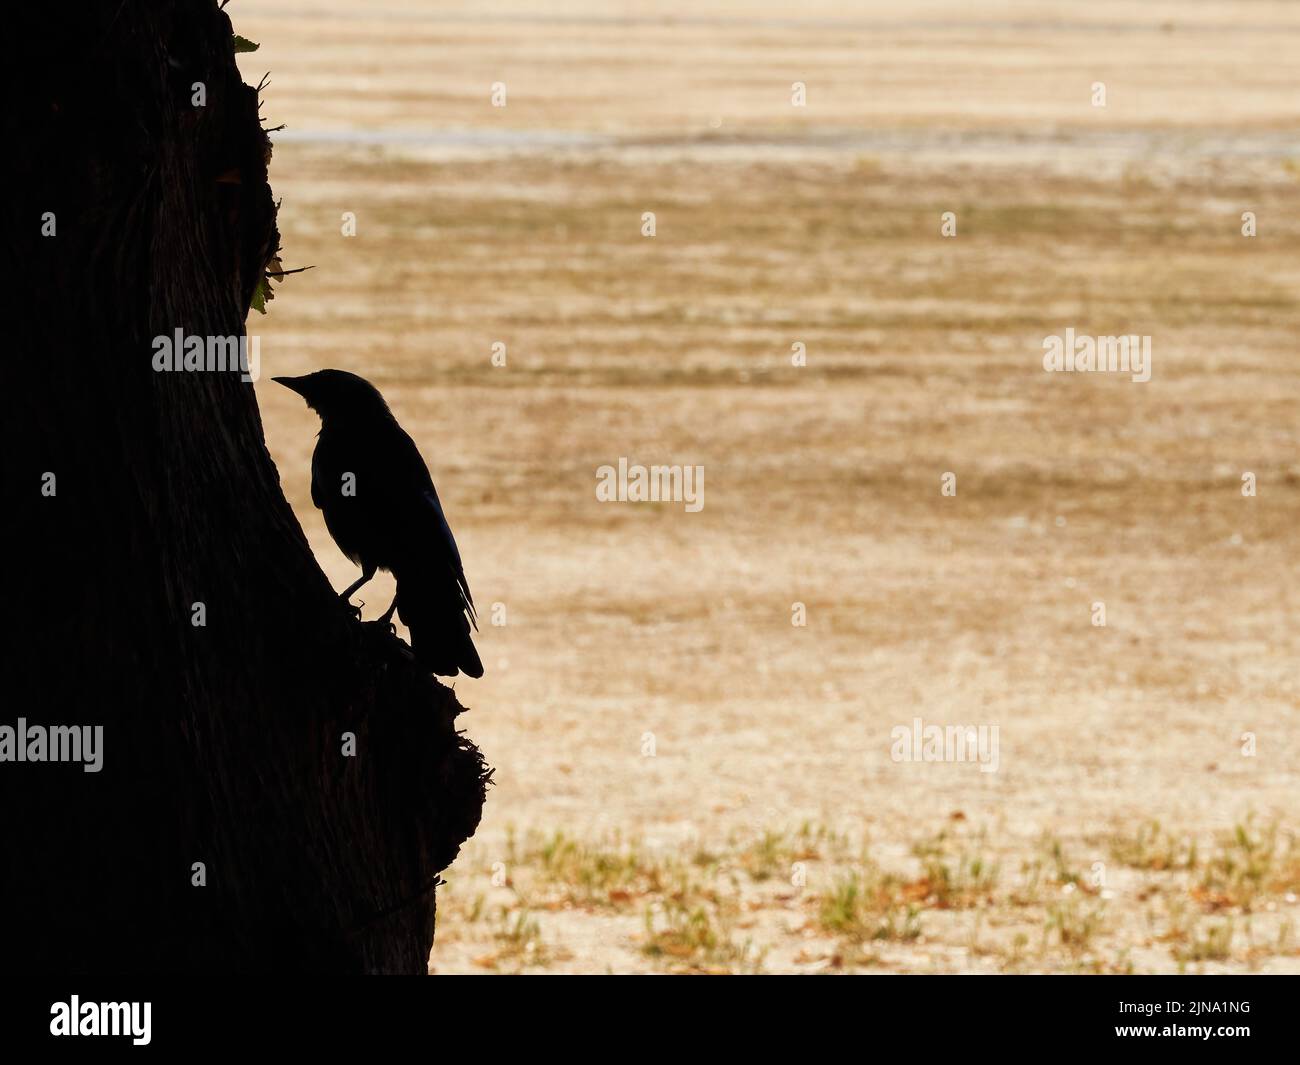 Un corbeau - oiseau de mauvais augure et de désastre - perché sur un tronc d'arbre en silhouette, devant un Richmond Green Park, baigné de soleil et frappé par la sécheresse. Banque D'Images